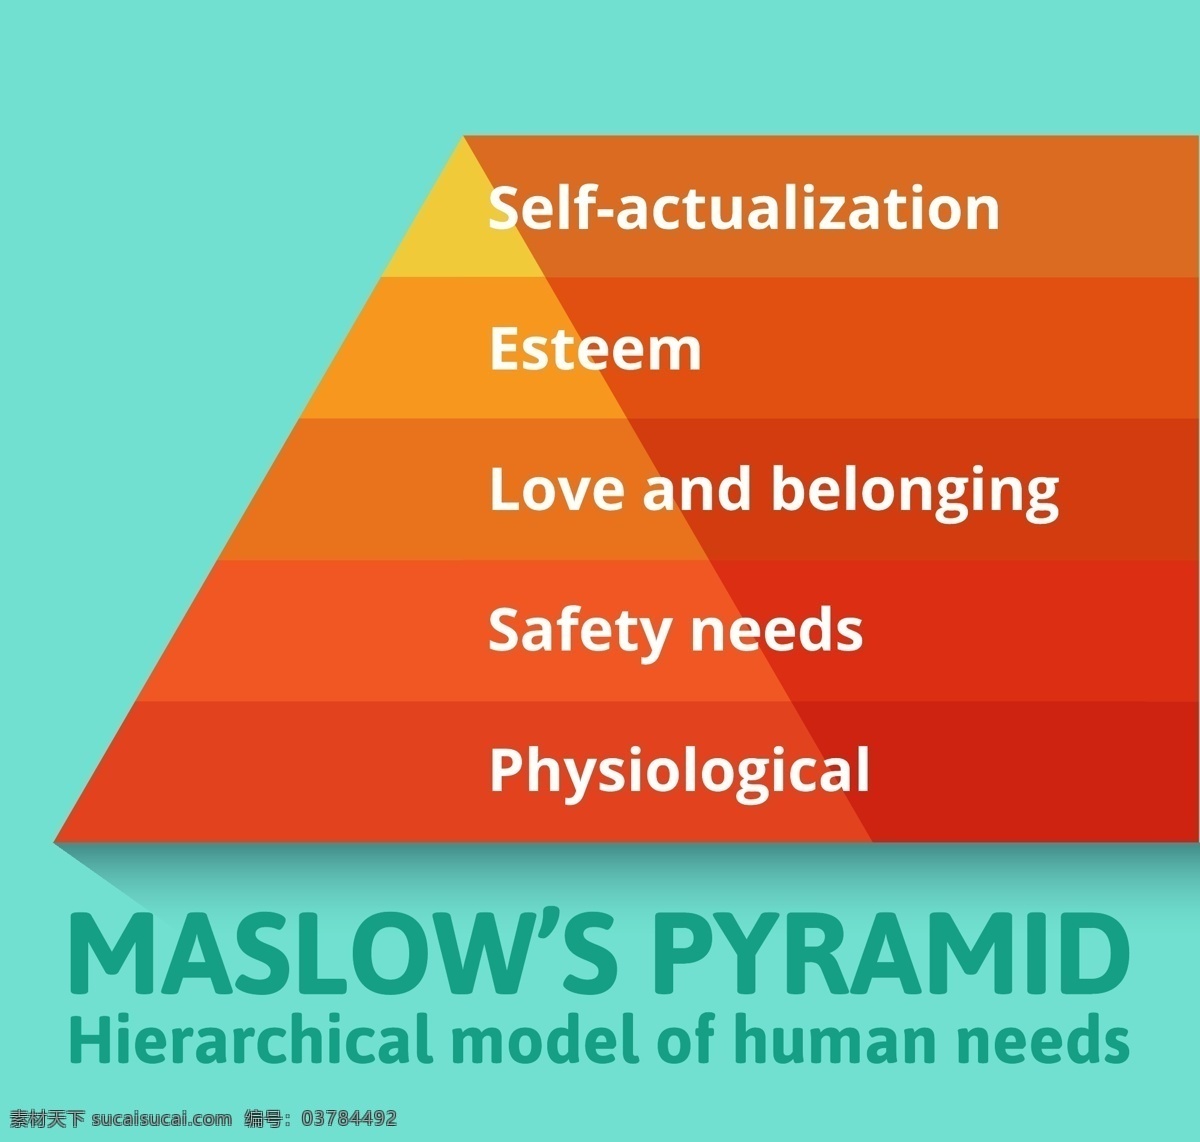 马斯洛 需求 金字塔 人心 理学 等级 生理 安全 爱情 归属 自尊 自我 行为